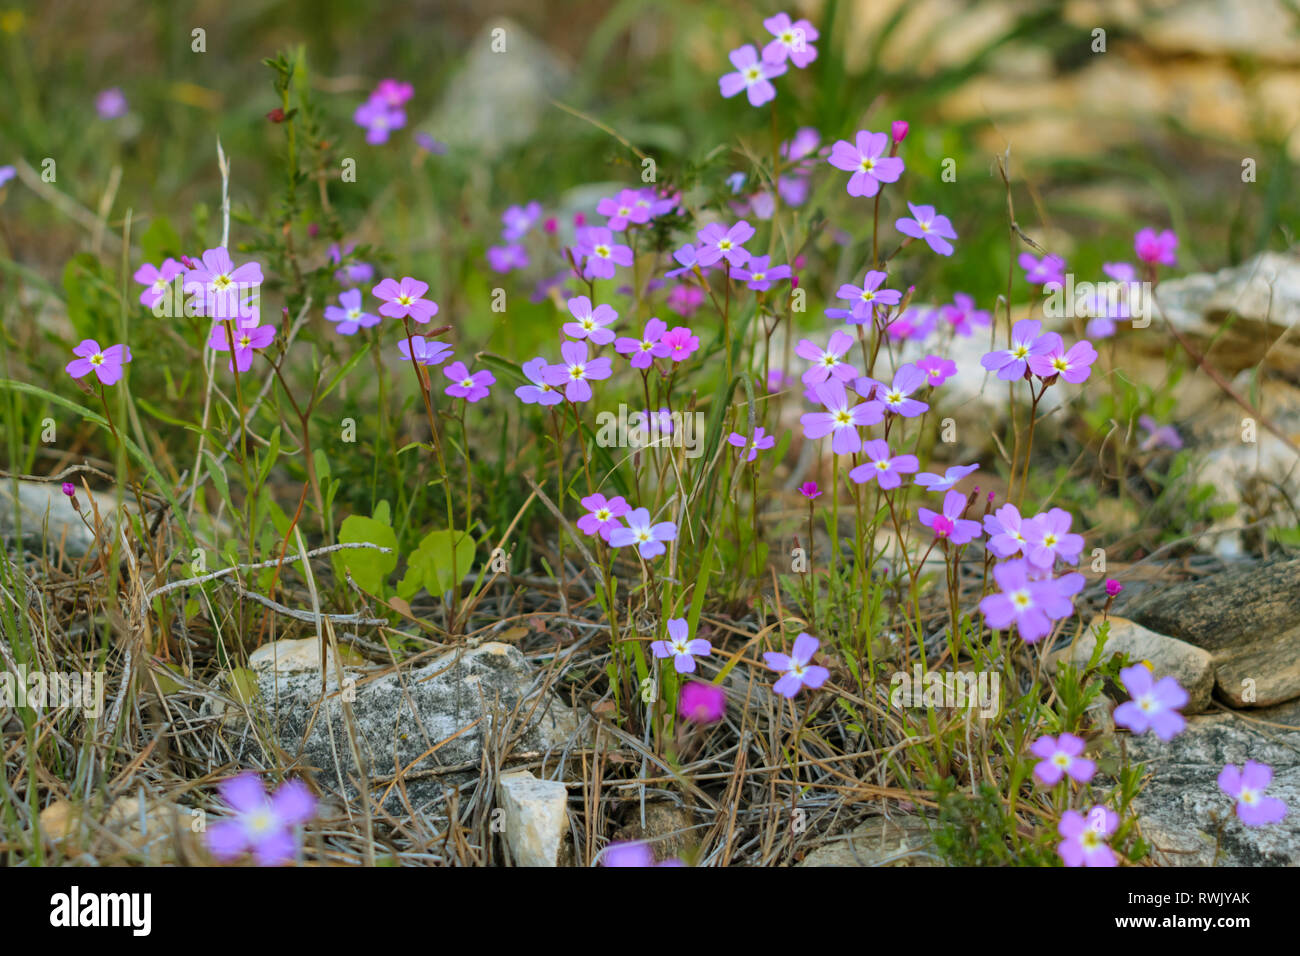 Malcolmia graeca wildflowers Stock Photo